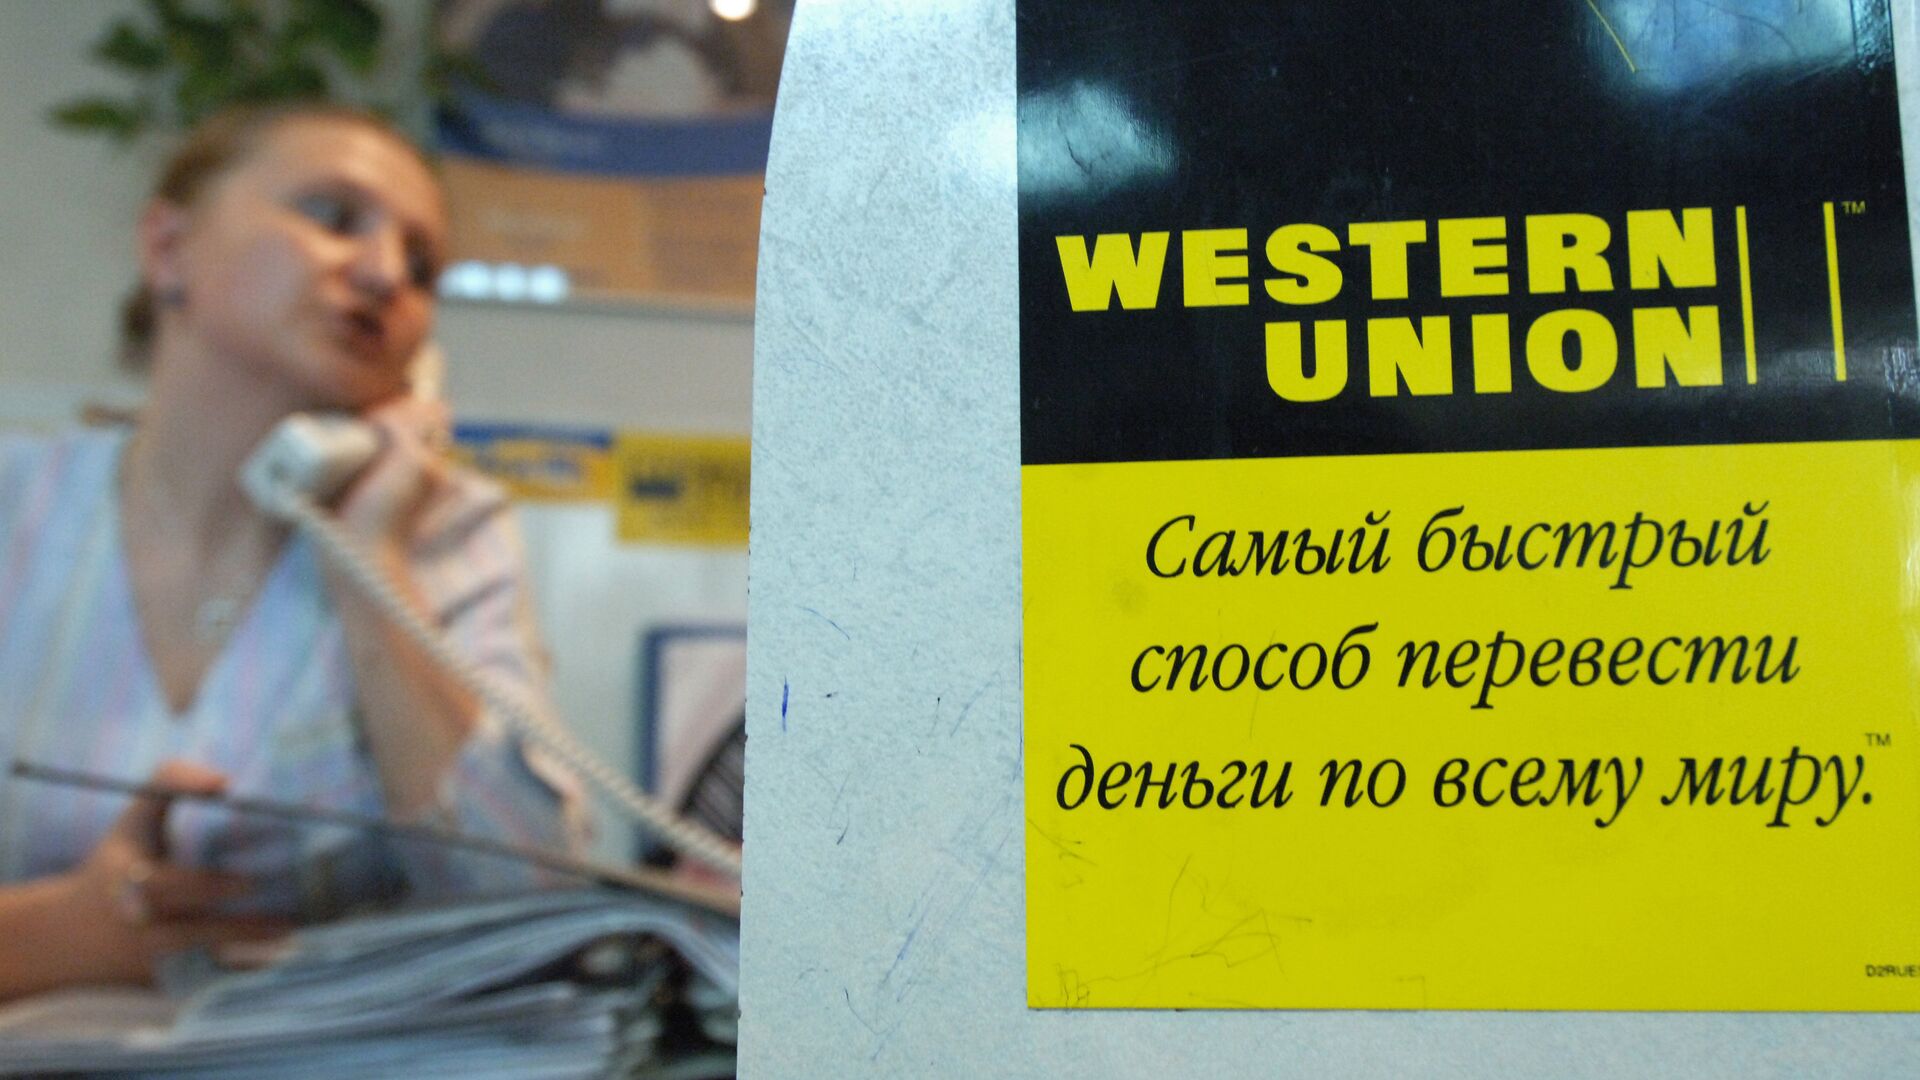 Western Union прекратит осуществлять переводы внутри России, пишет СМИ